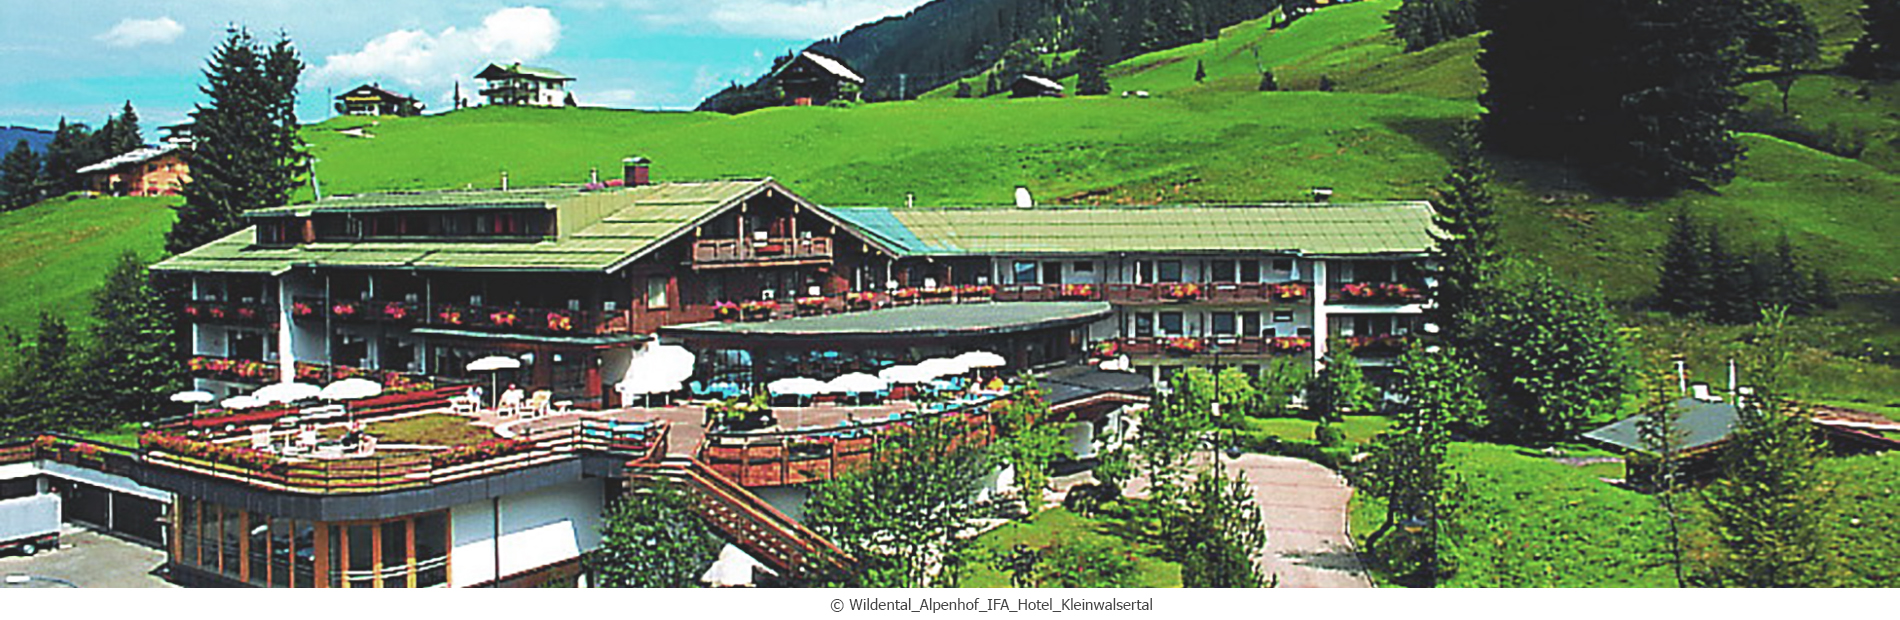 22aw_aussen_lage_Wildental_Alpenhof_IFA_Hotel_Kleinwalsertal_hires_webC